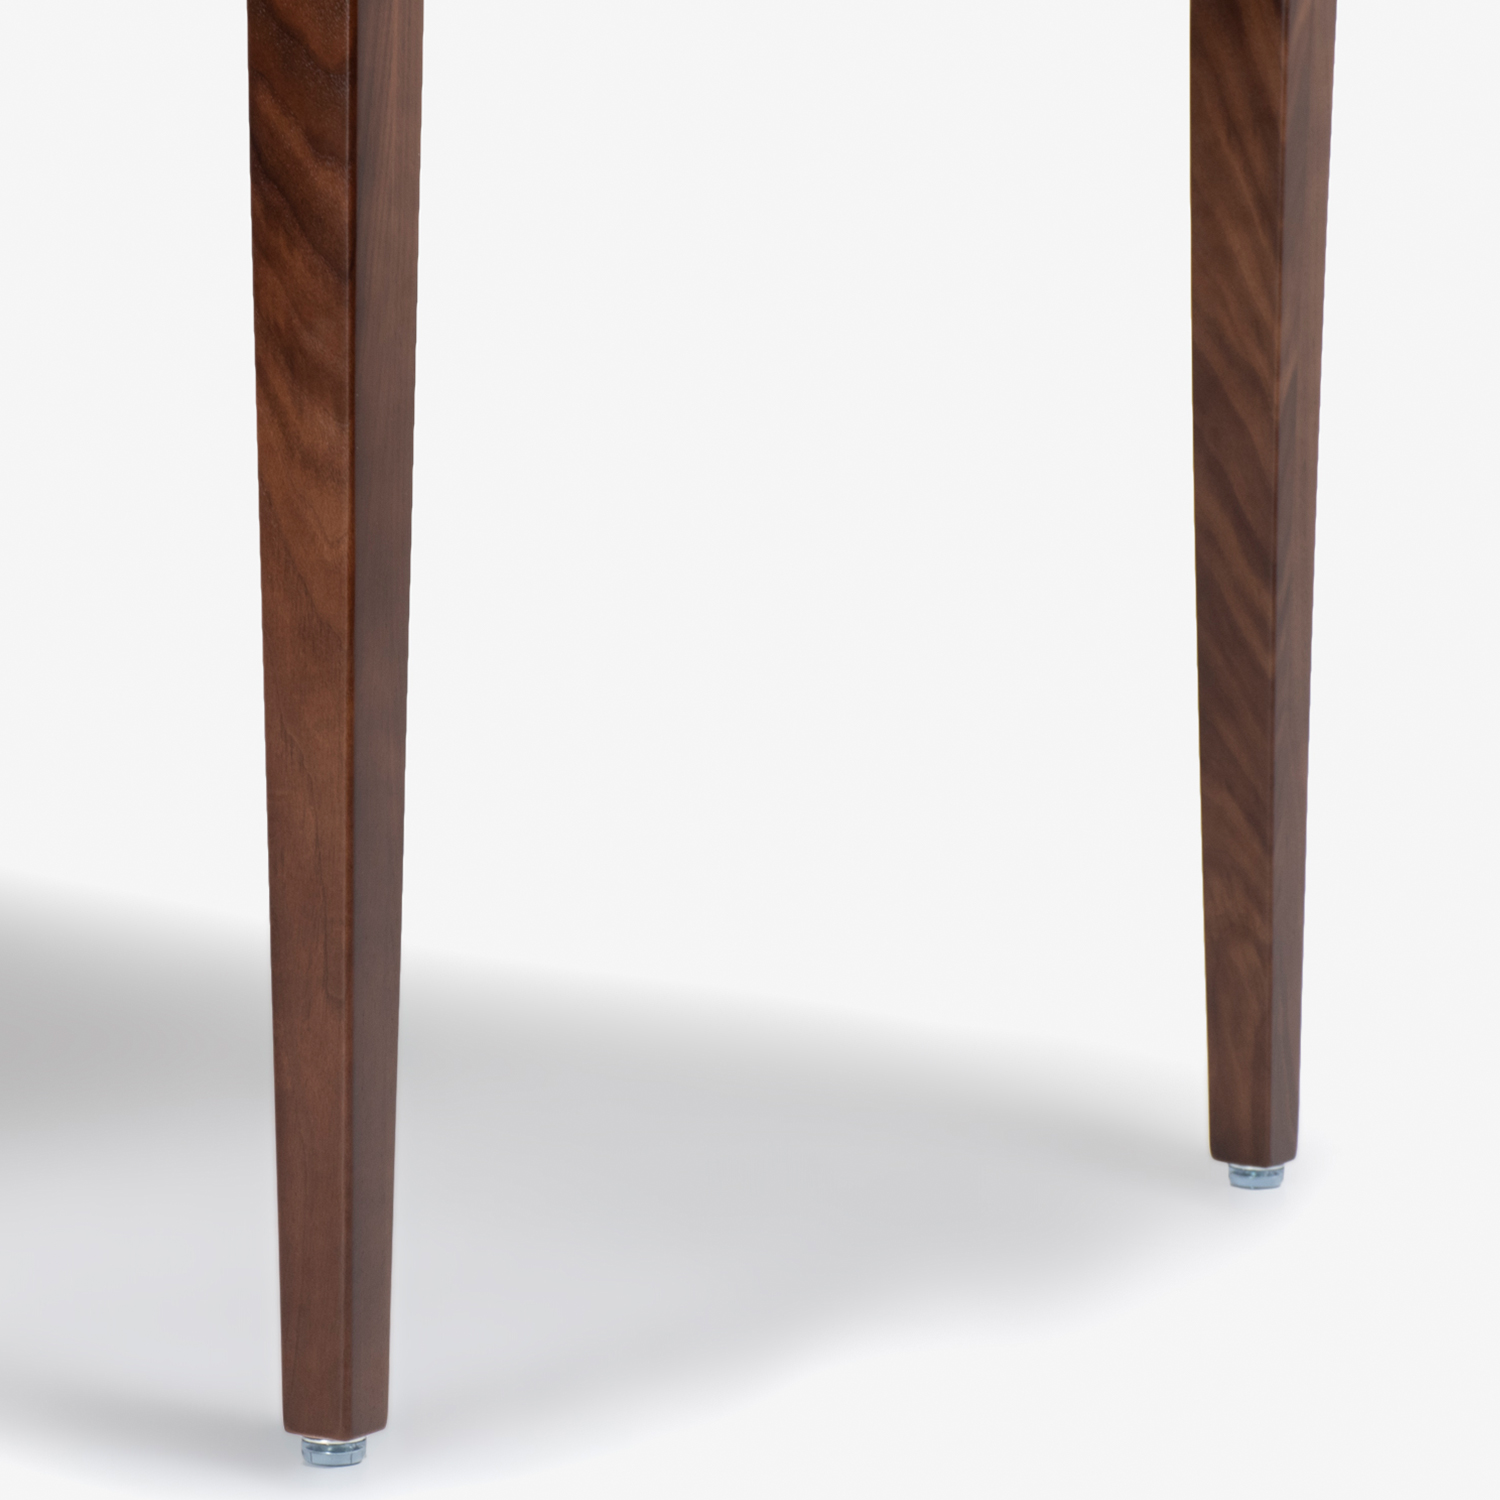 秋田木工 ダイニングテーブル「N-T005」ウォールナット材 幅135cm